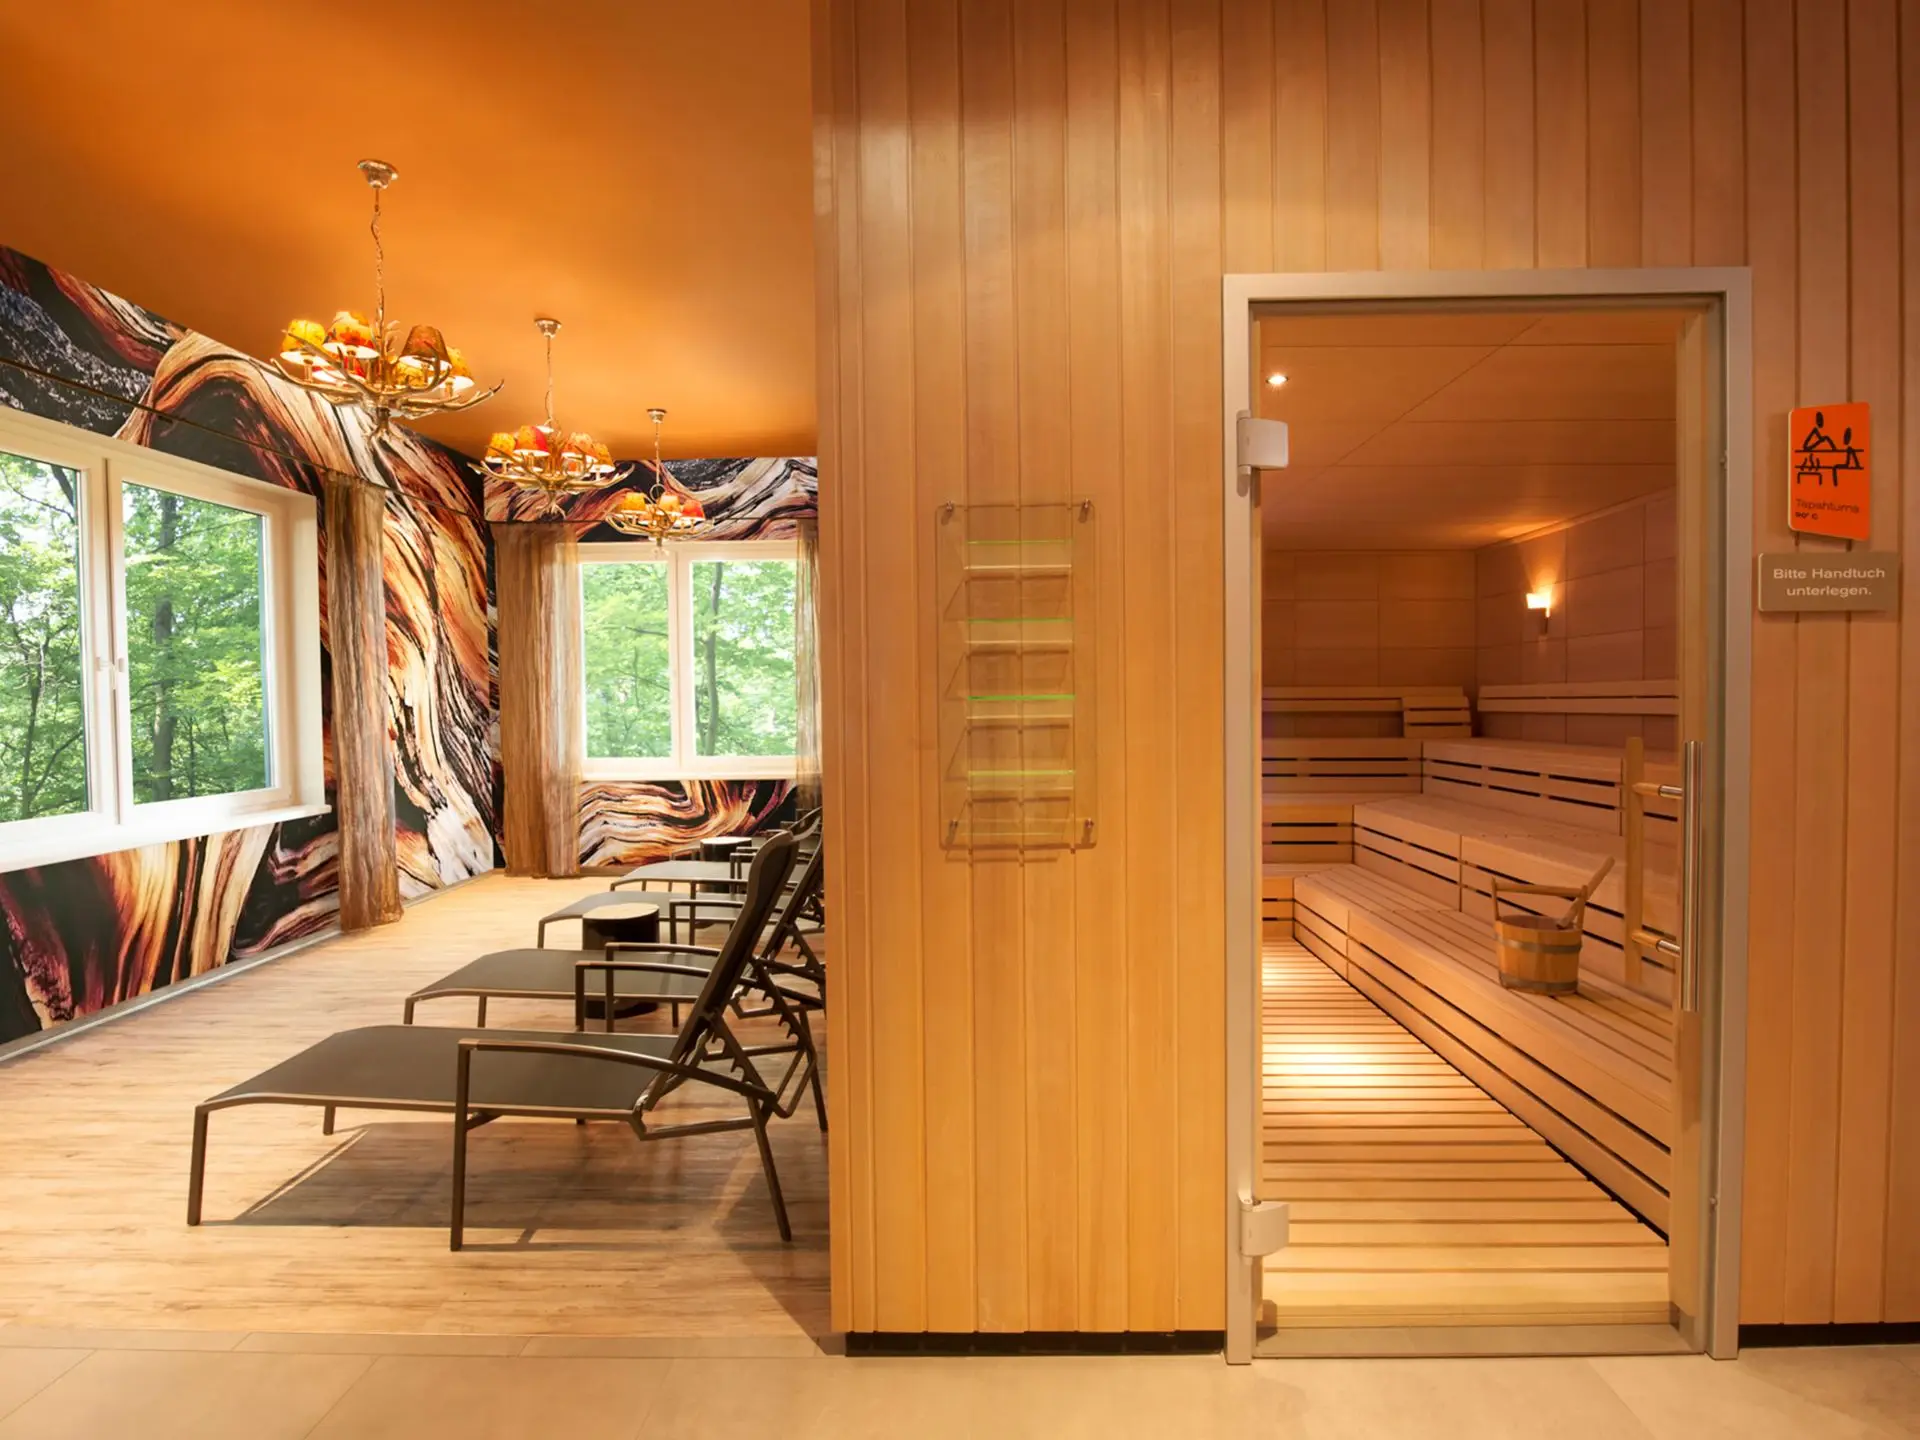 Im rechten Teil ist die Eingangstür zu einer hölzernen Sauna eingelassen in eine mit Holz verkleidete Wand zu sehen. Am linken Rand stehen einige Liegen mit Blickrichtung Fenster mit Ausblick ins Grüne aufgereiht.